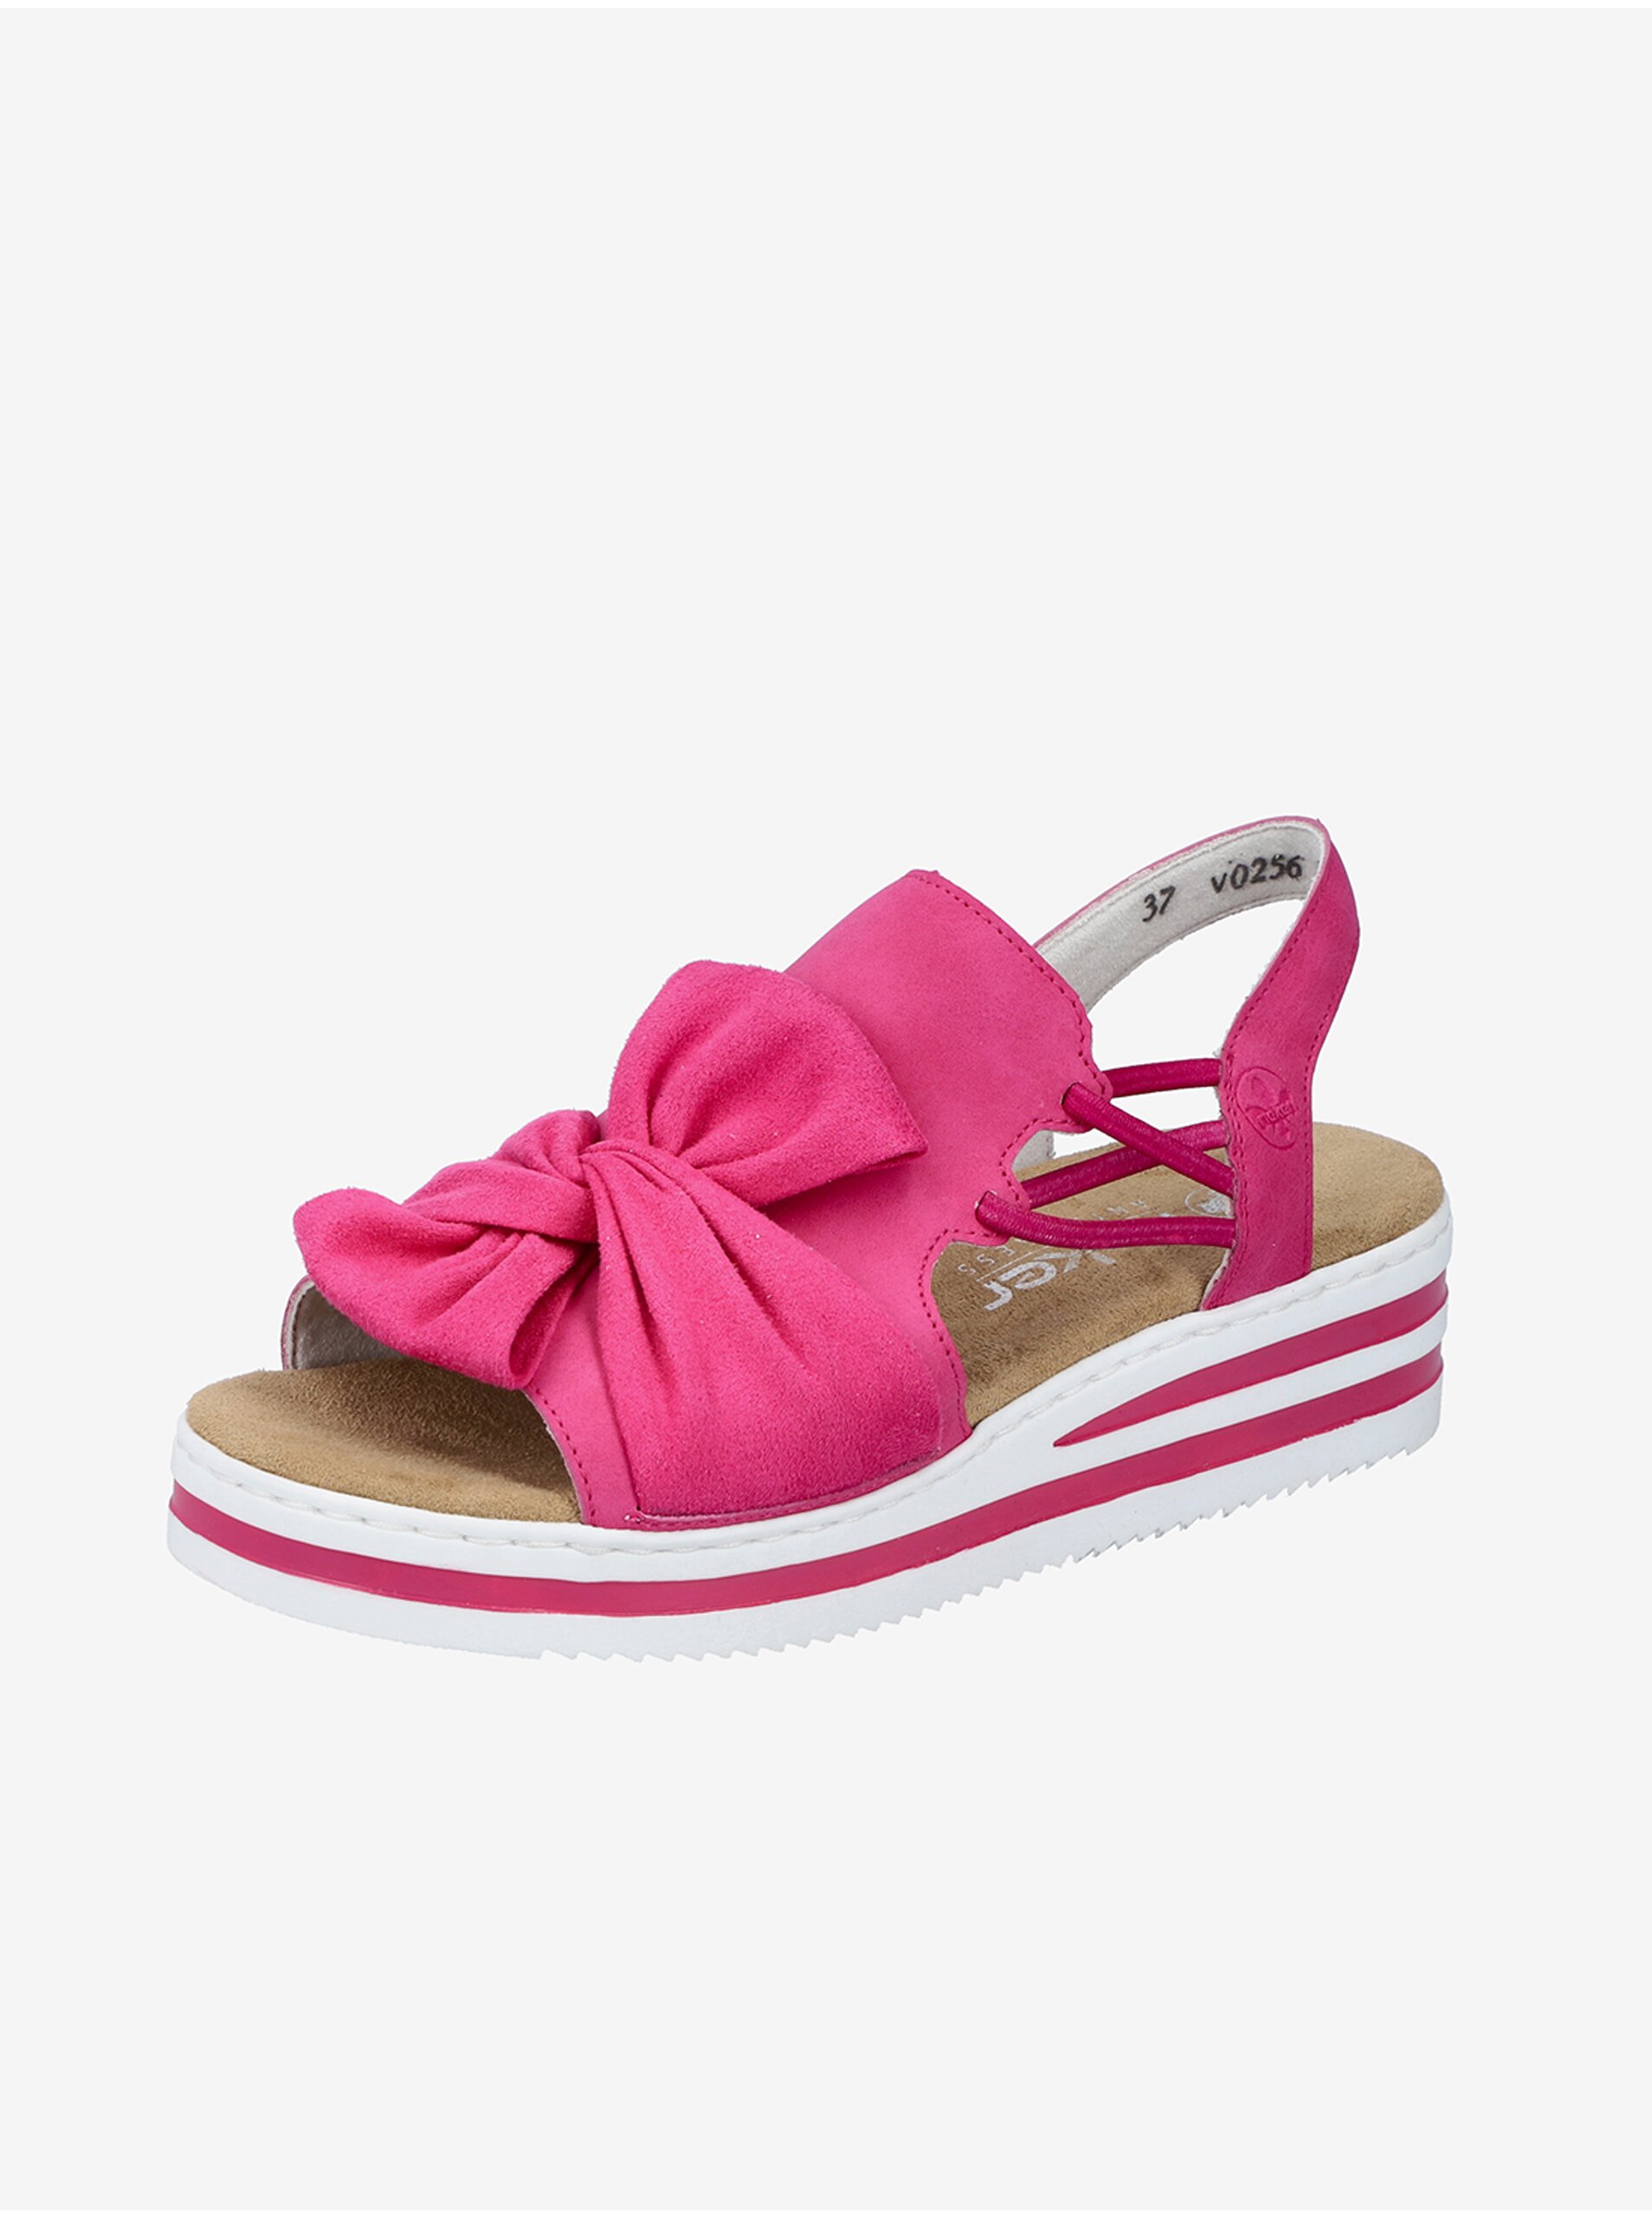 E-shop Tmavě růžové dámské sandálky v semišové úpravě Rieker